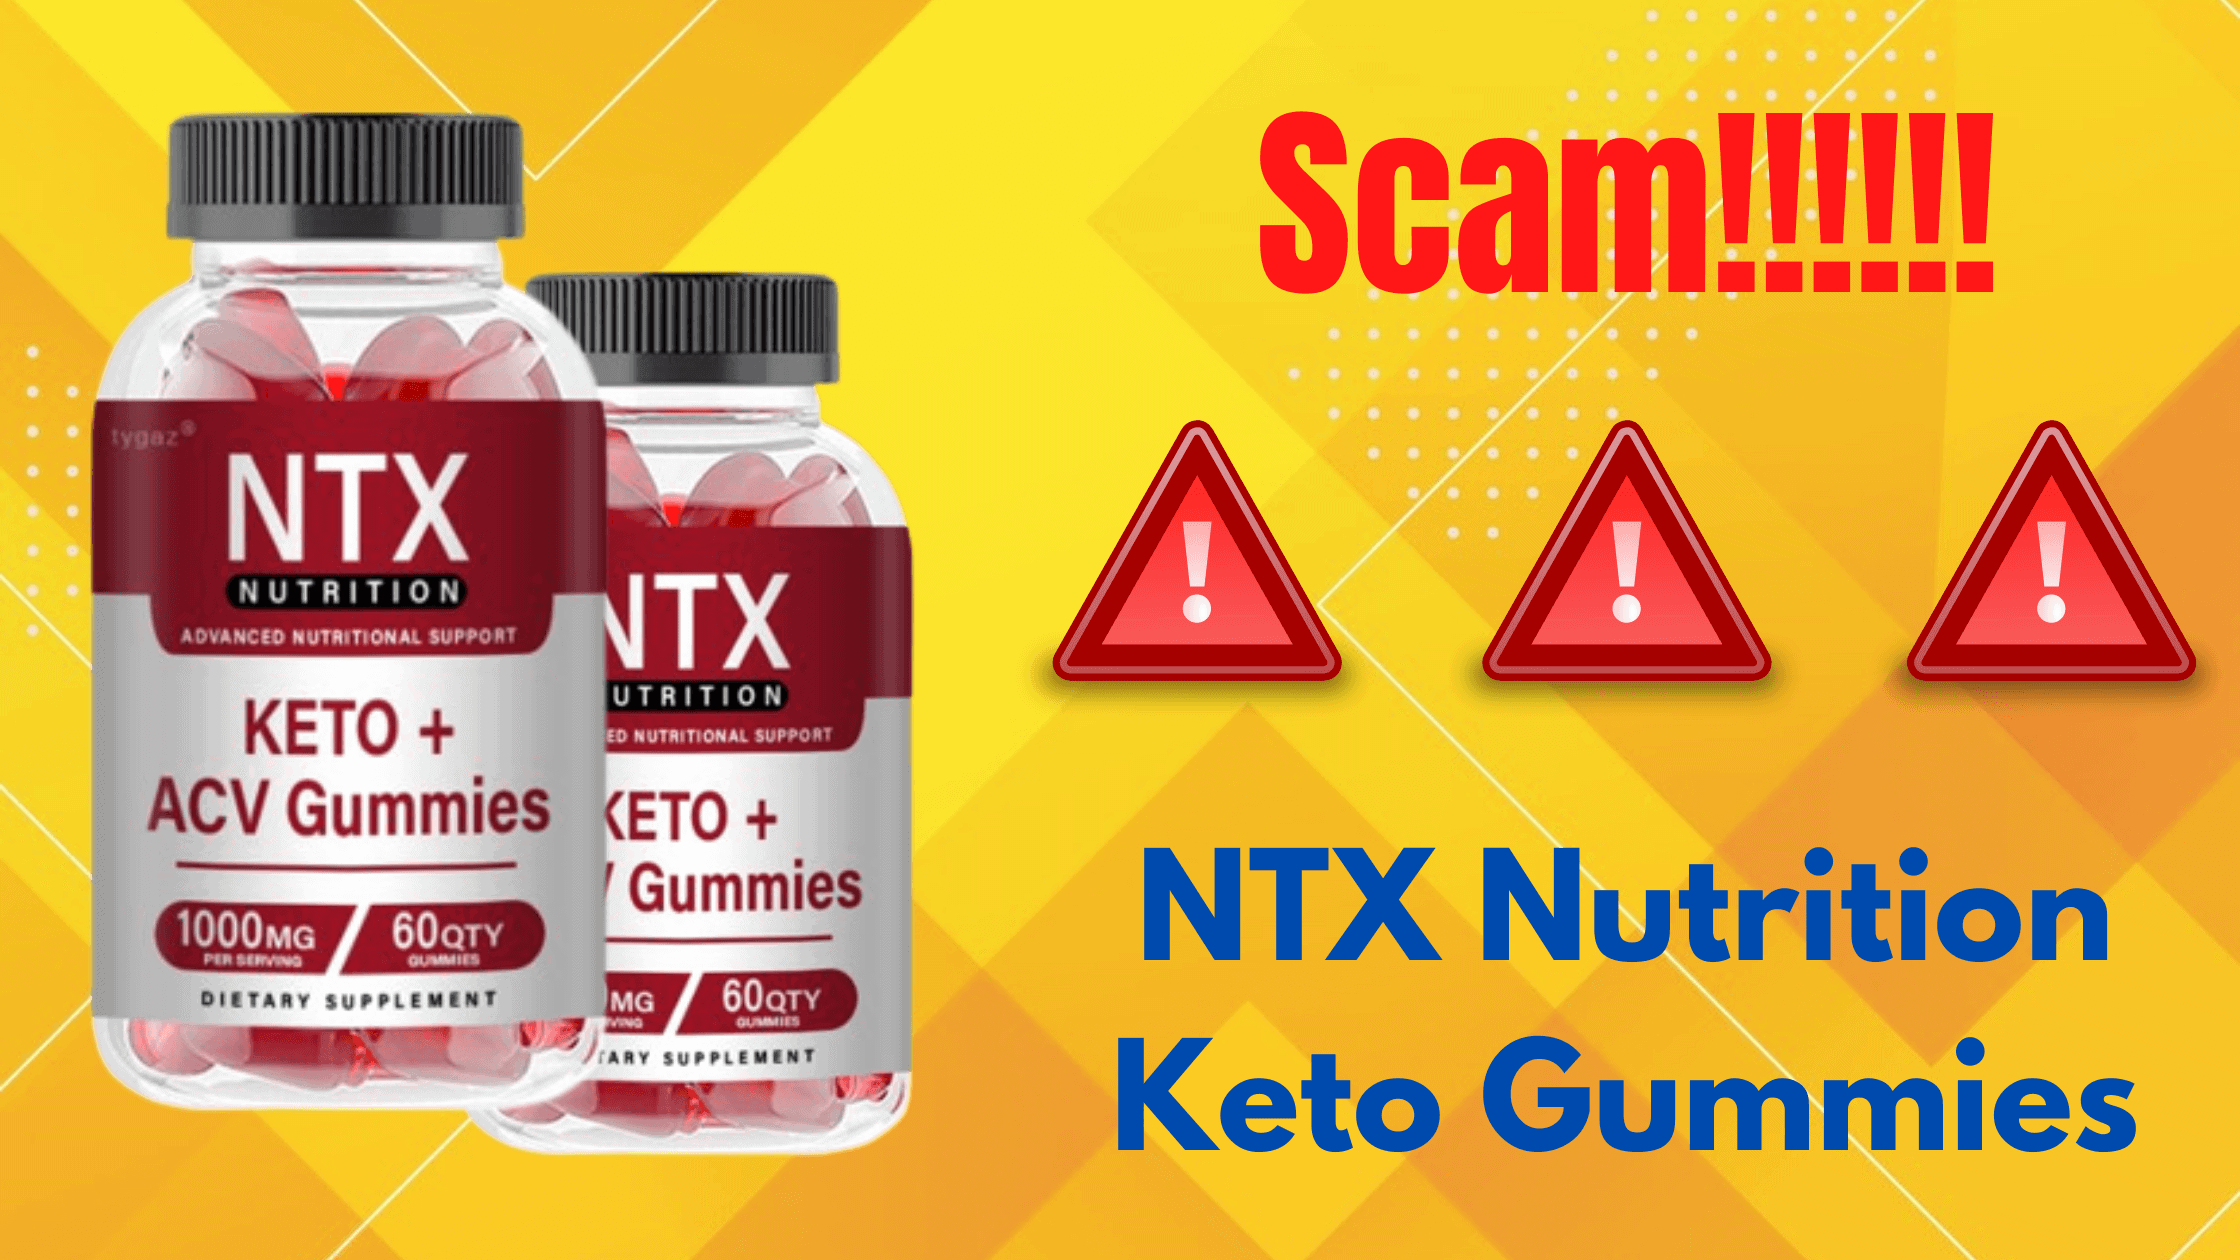 NTX Nutrition Keto Gummies Scam